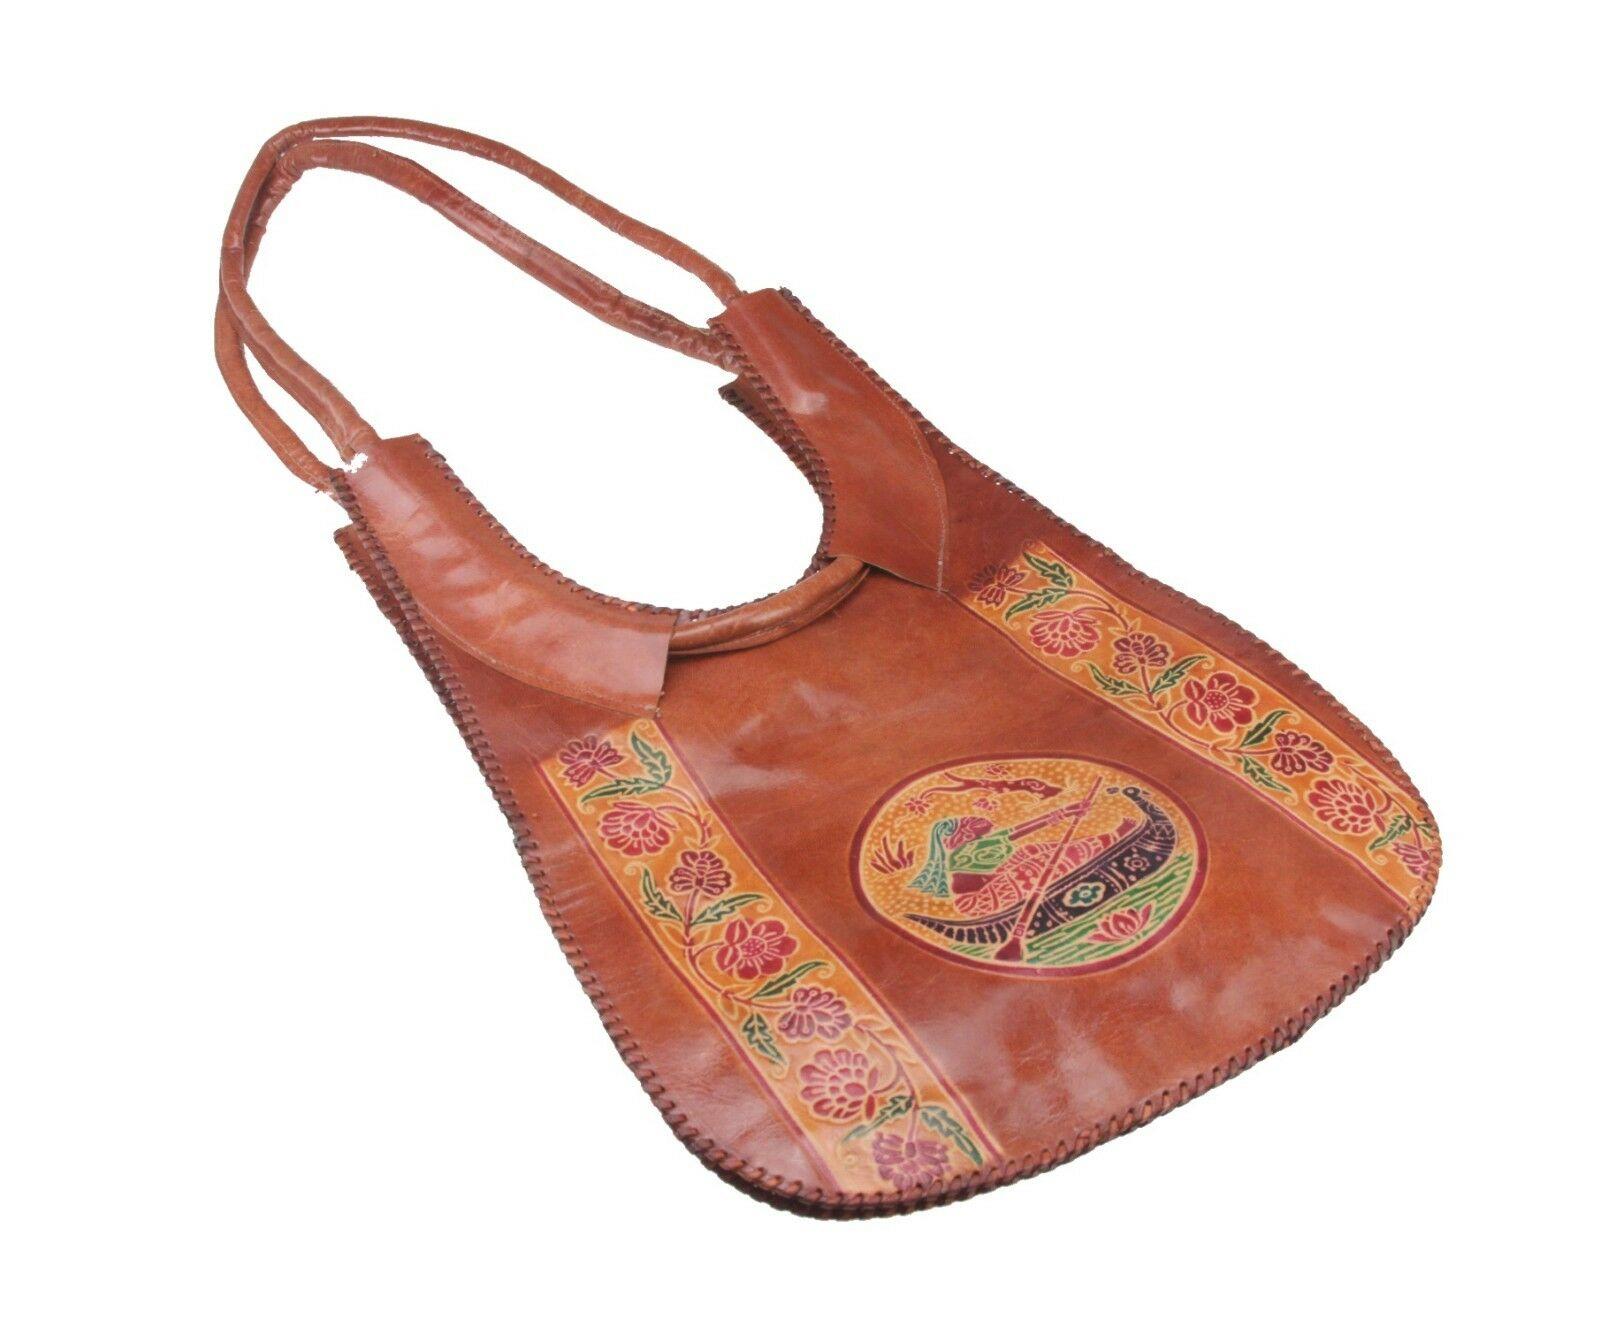 Tribal Woven Vintage Brown Leather Bag African Handmade Handbag Shoulder Bag